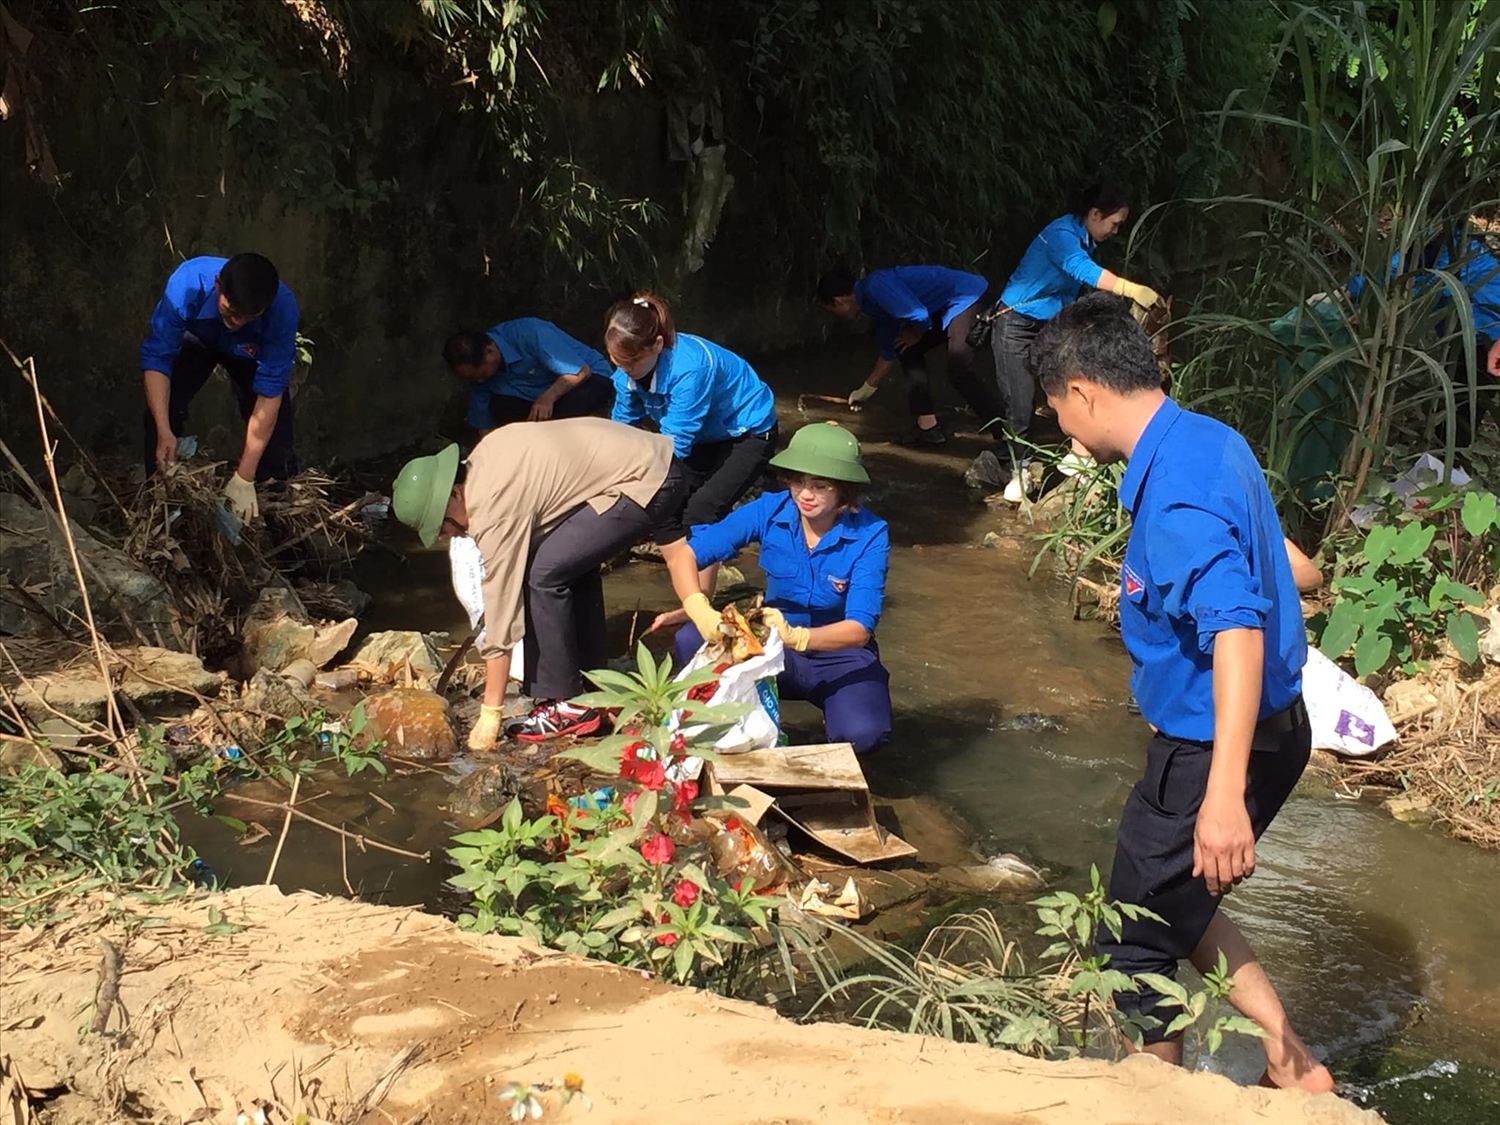 Cán bộ và người dân huyện Hàm Yên dọn dẹp vệ sinh, thu gom rác thải trong "Ngày thứ bảy cùng dân"